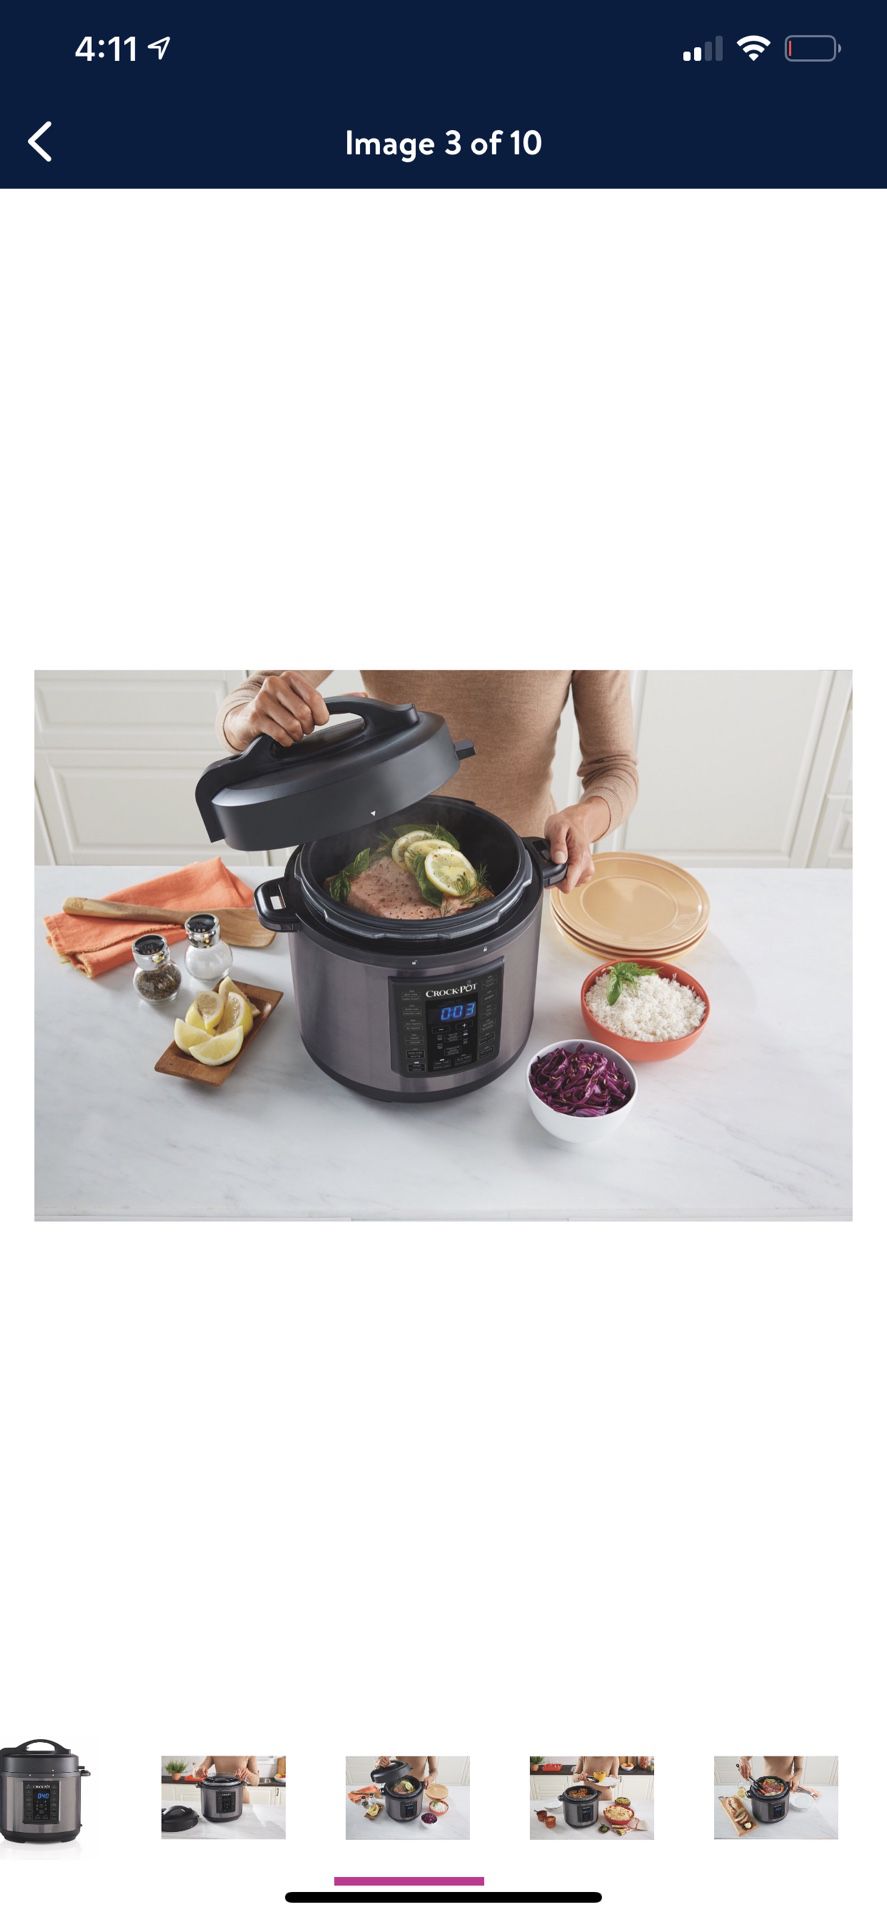 Crock-Pot 6 Qt 8-in-1 Multi-Use pressure cooker